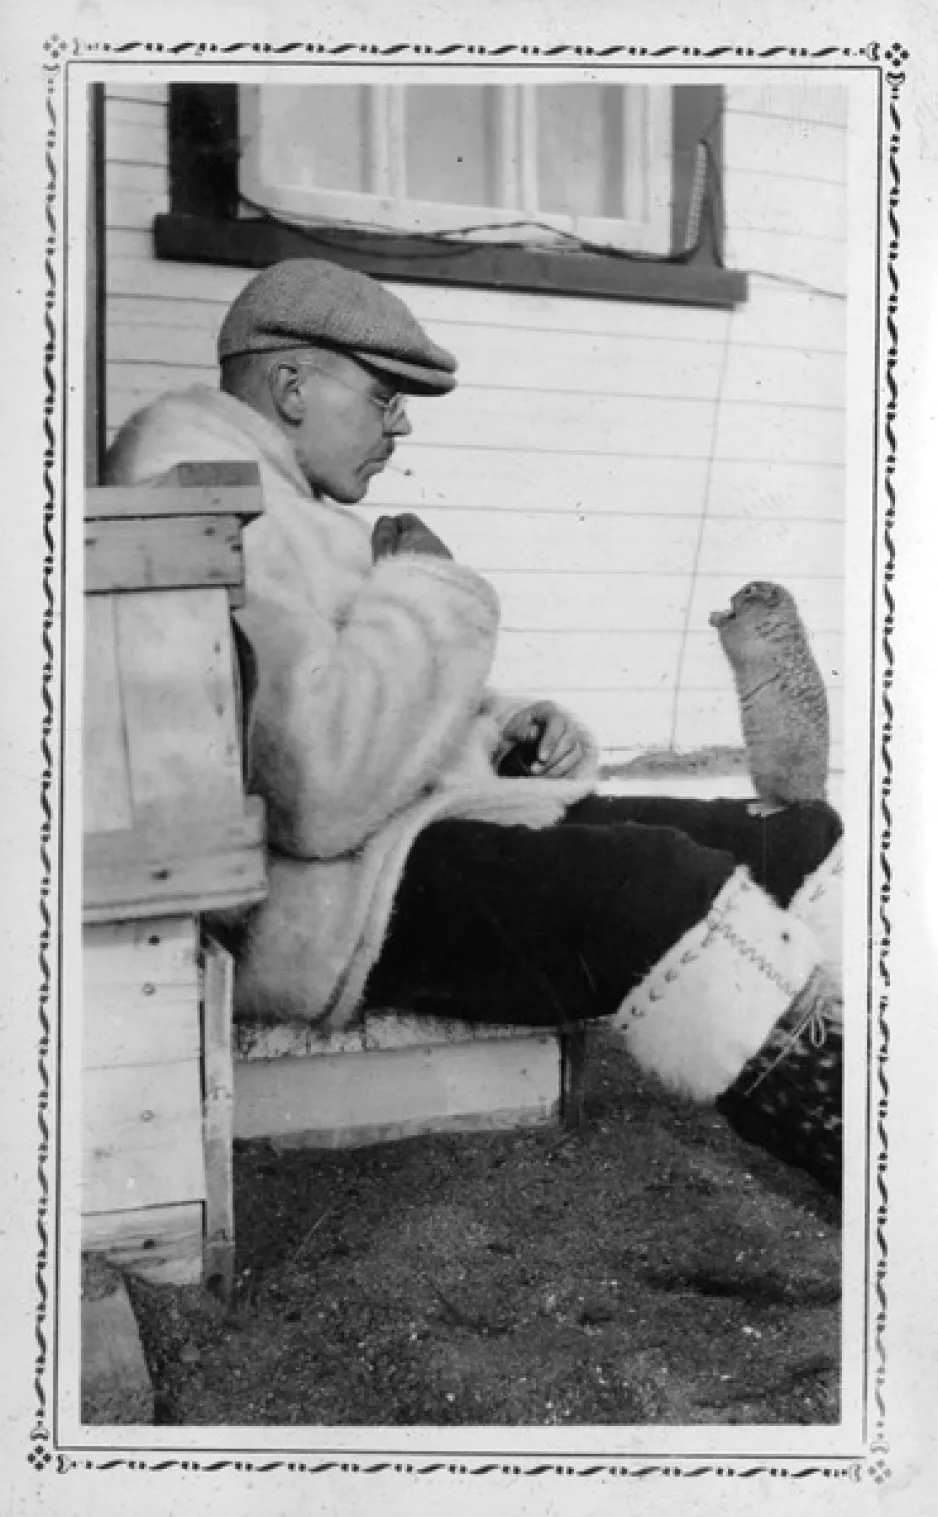 Une photographie verticale en noir et blanc d'un homme assis devant une maison blanche, au sol, nourrissant à la main un écureuil qui se tient debout sur sa jambe pour chercher de la nourriture.